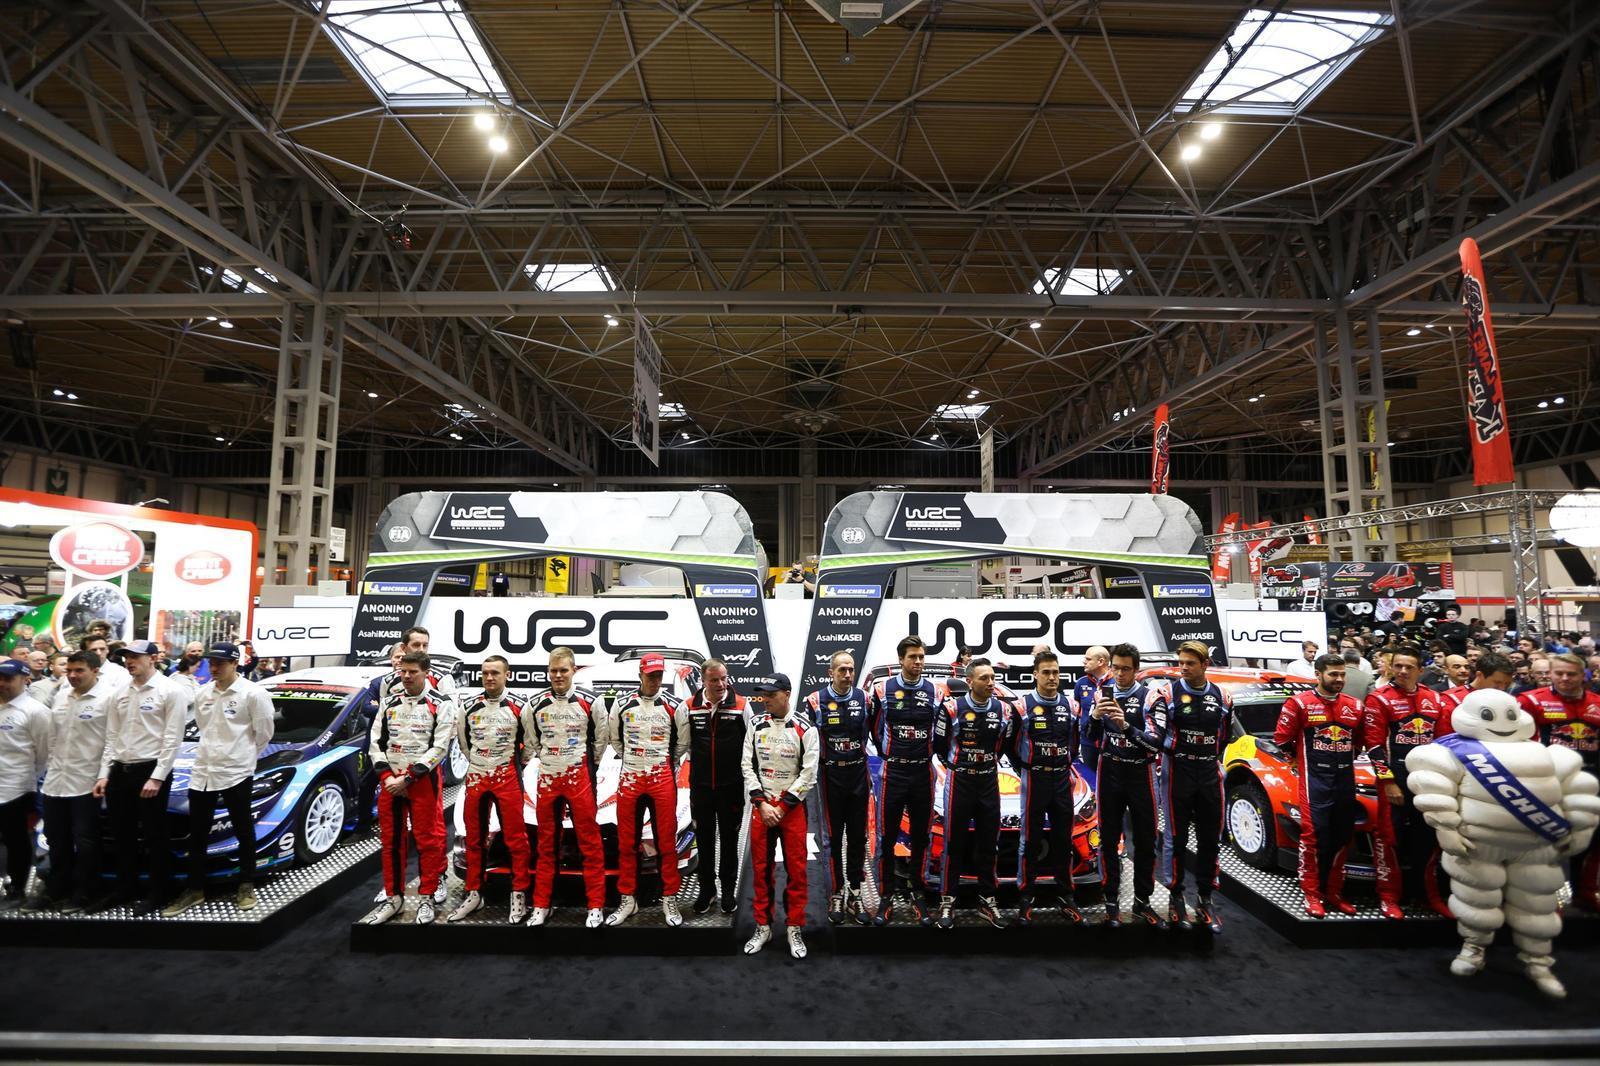 WRC launch 3